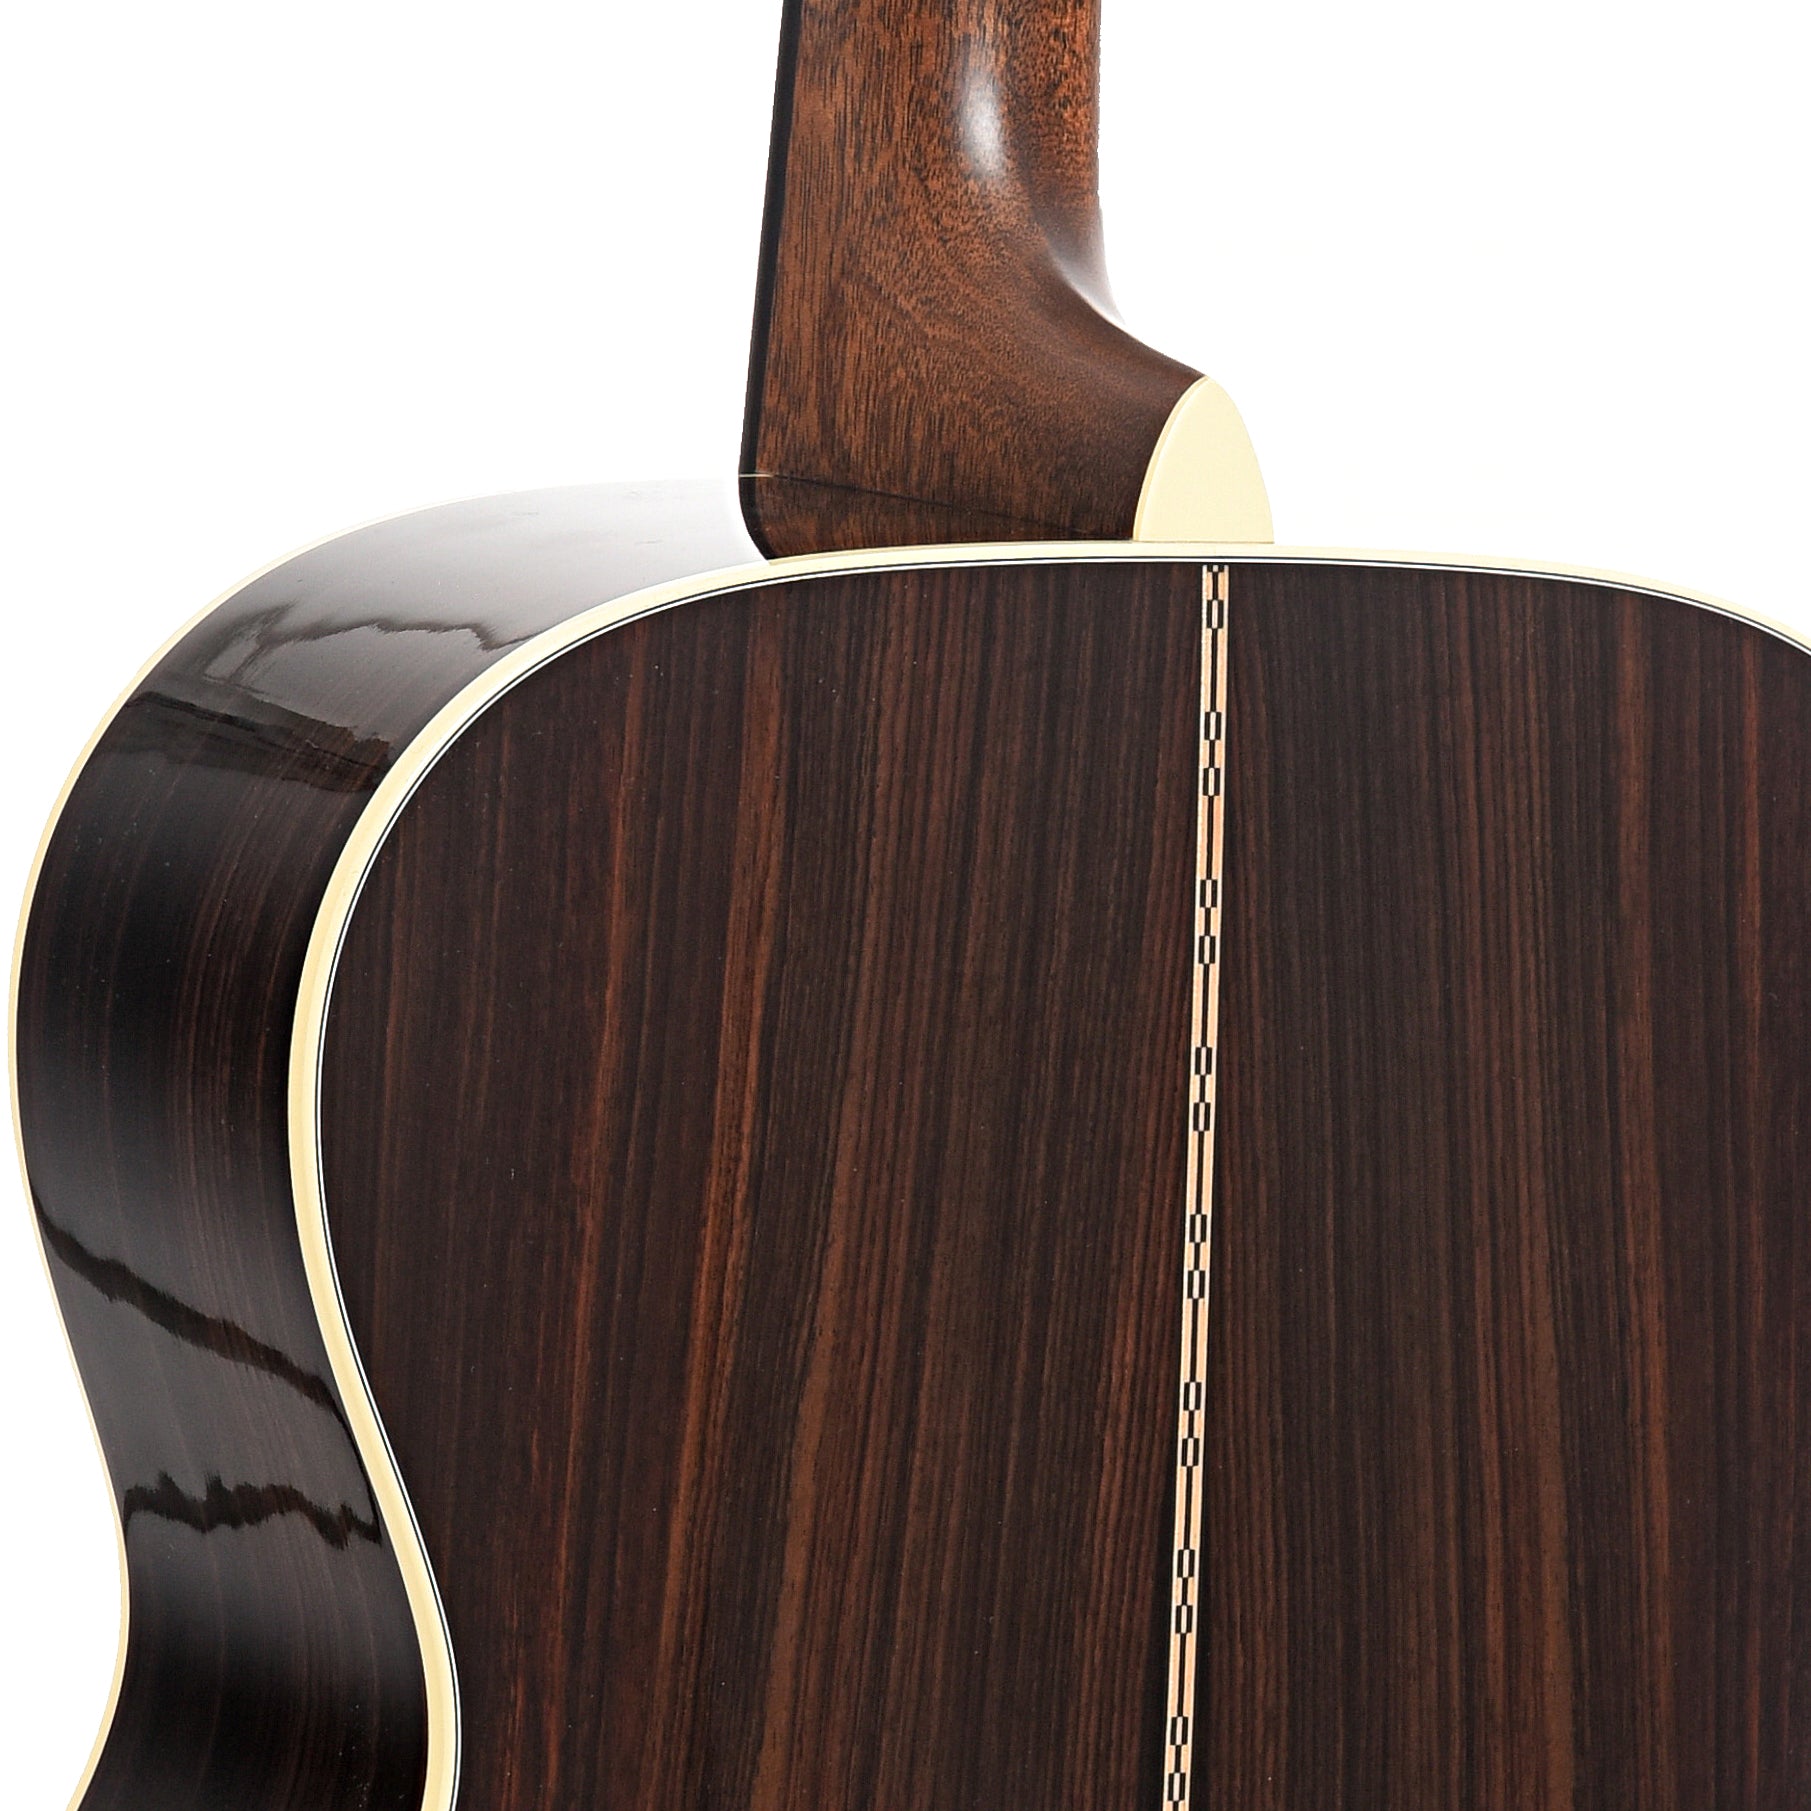 Neckjoint of Martin Custom Herringbone 28-Style OM Guitar & Case, Thinner Adirondack Top